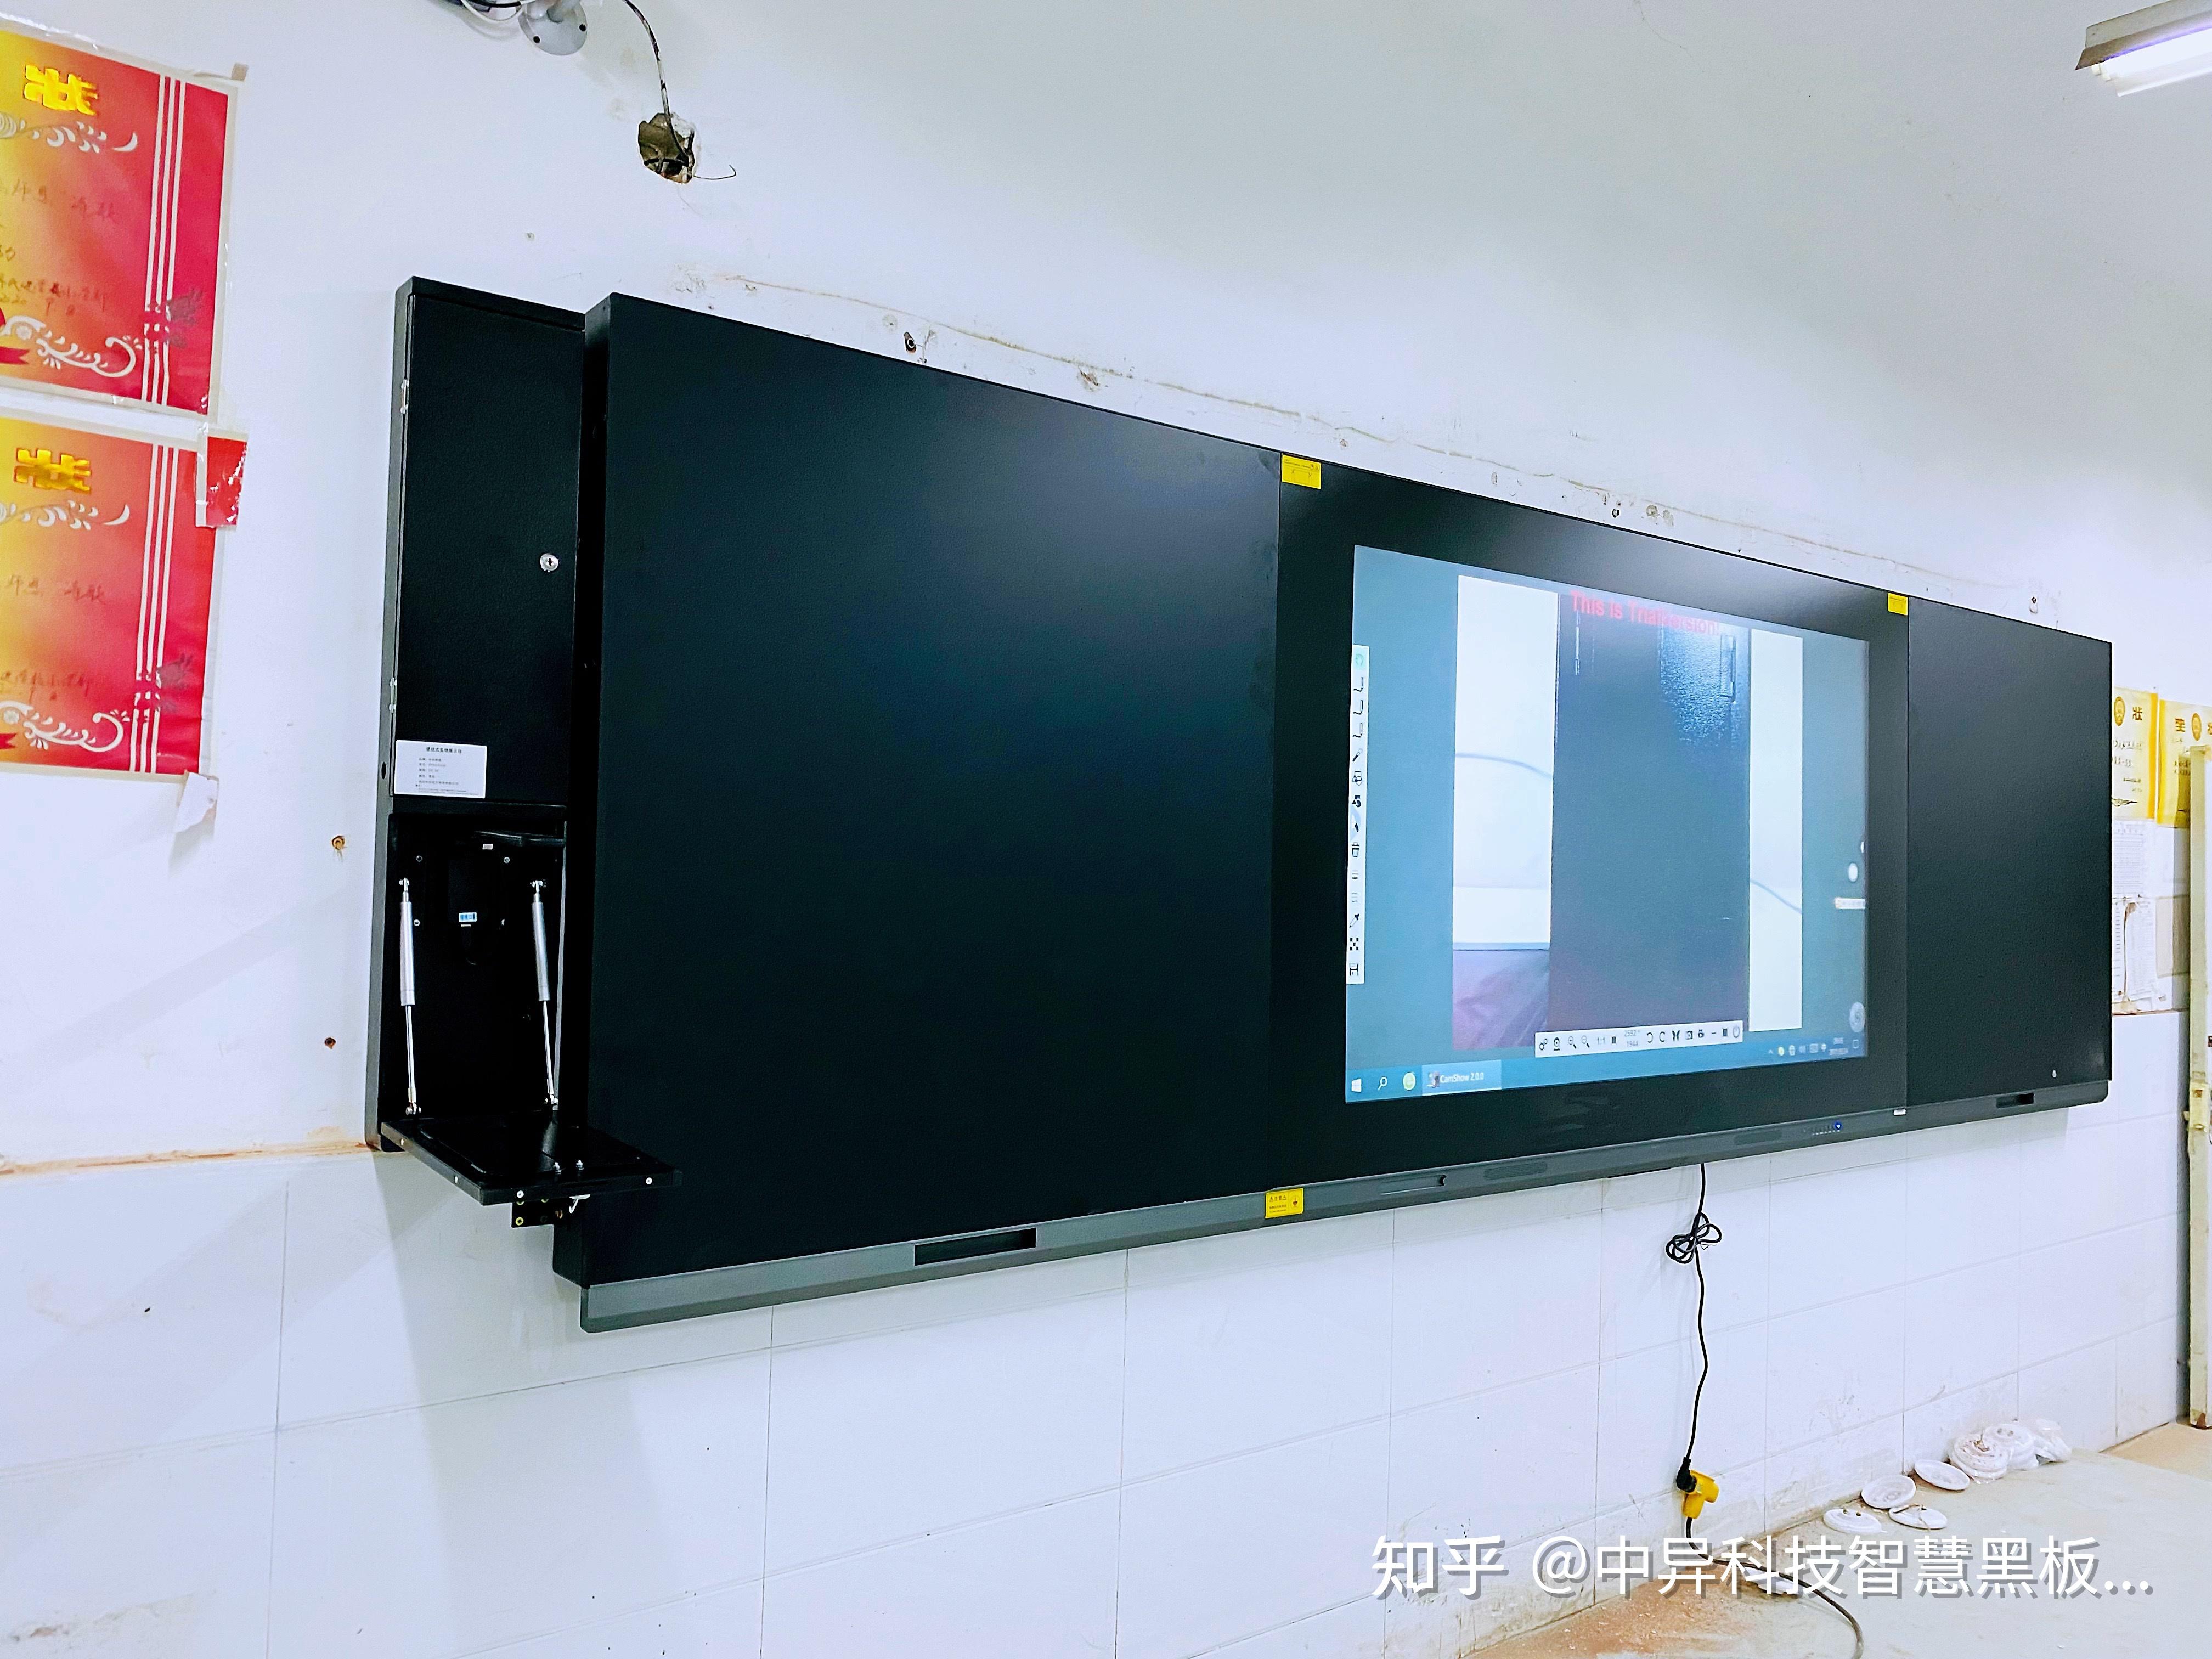 中异科技纳米智慧黑板是一款智能互动教学设备,集电容触控,液晶显示